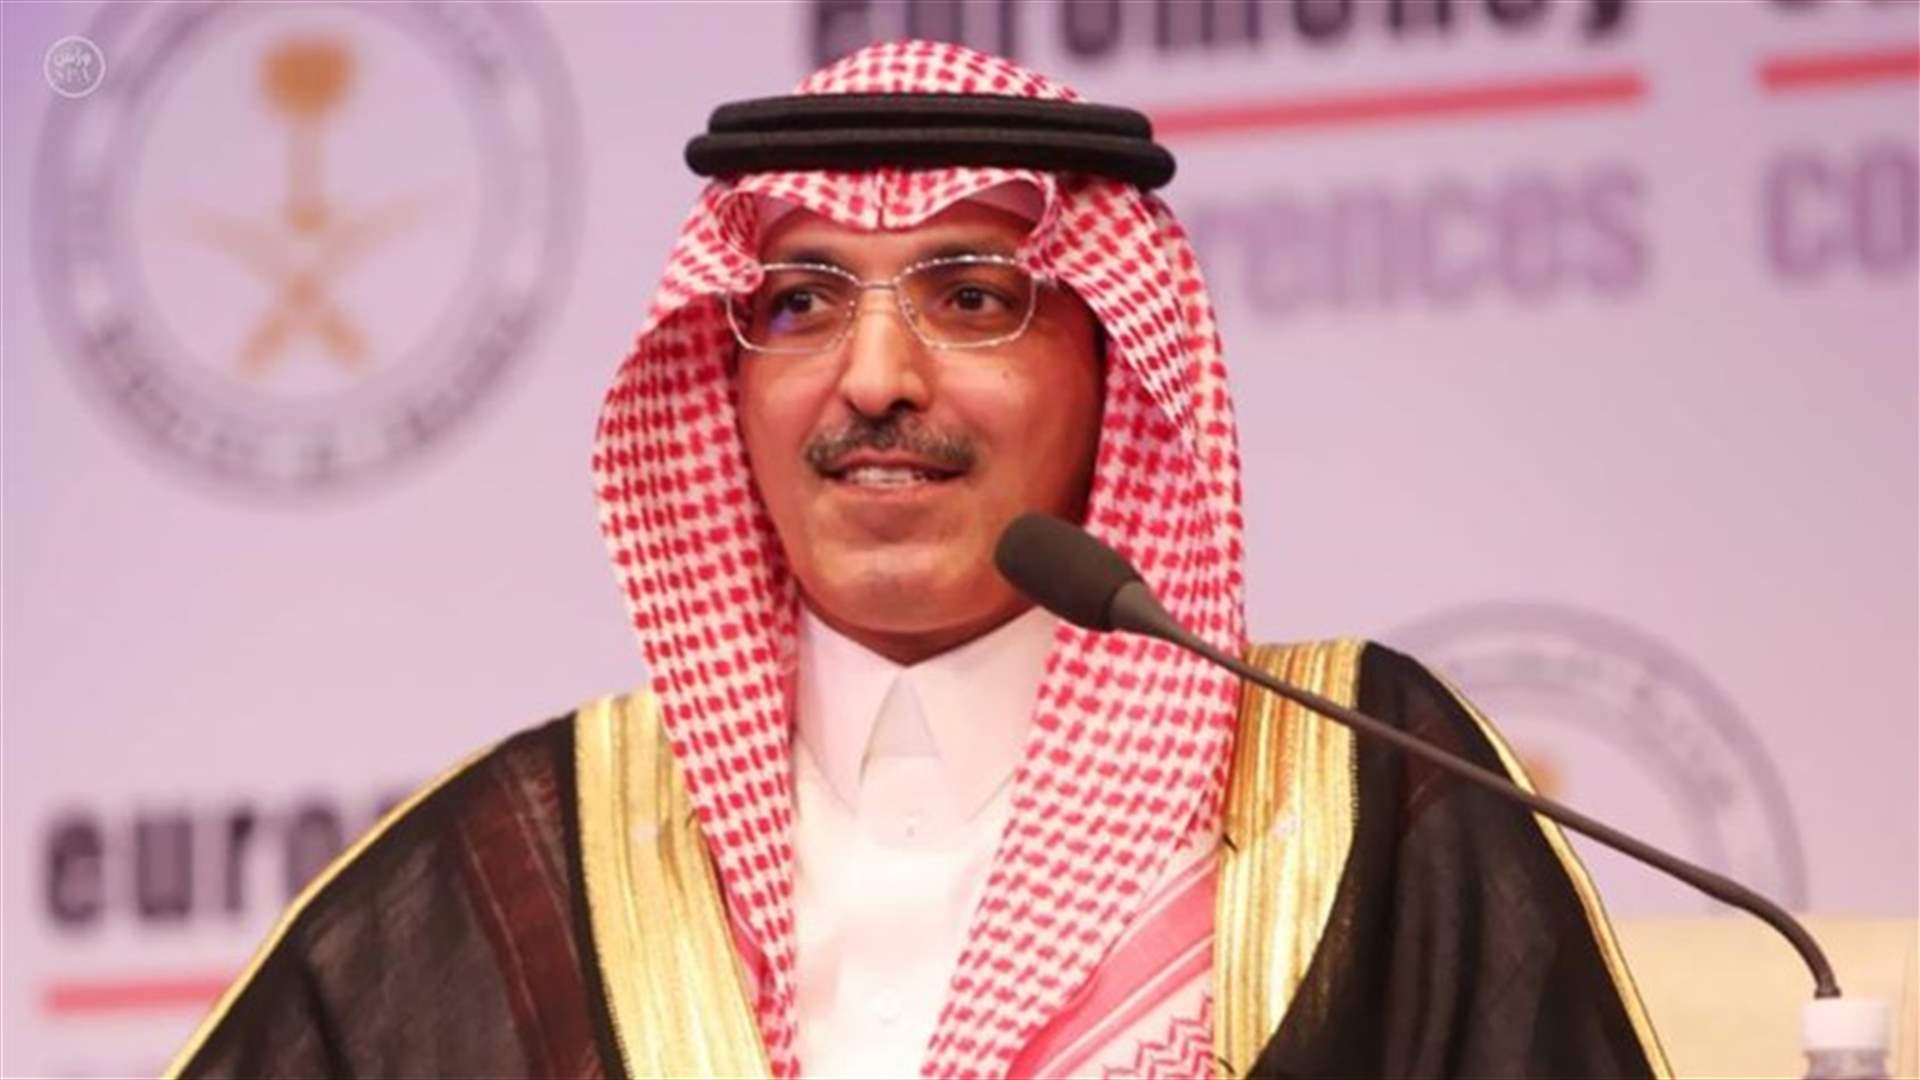 وزير المالية السعودي: إعلان أرامكو استئناف الإنتاج يثبت قدرتها على التعامل السريع مع أي أزمة